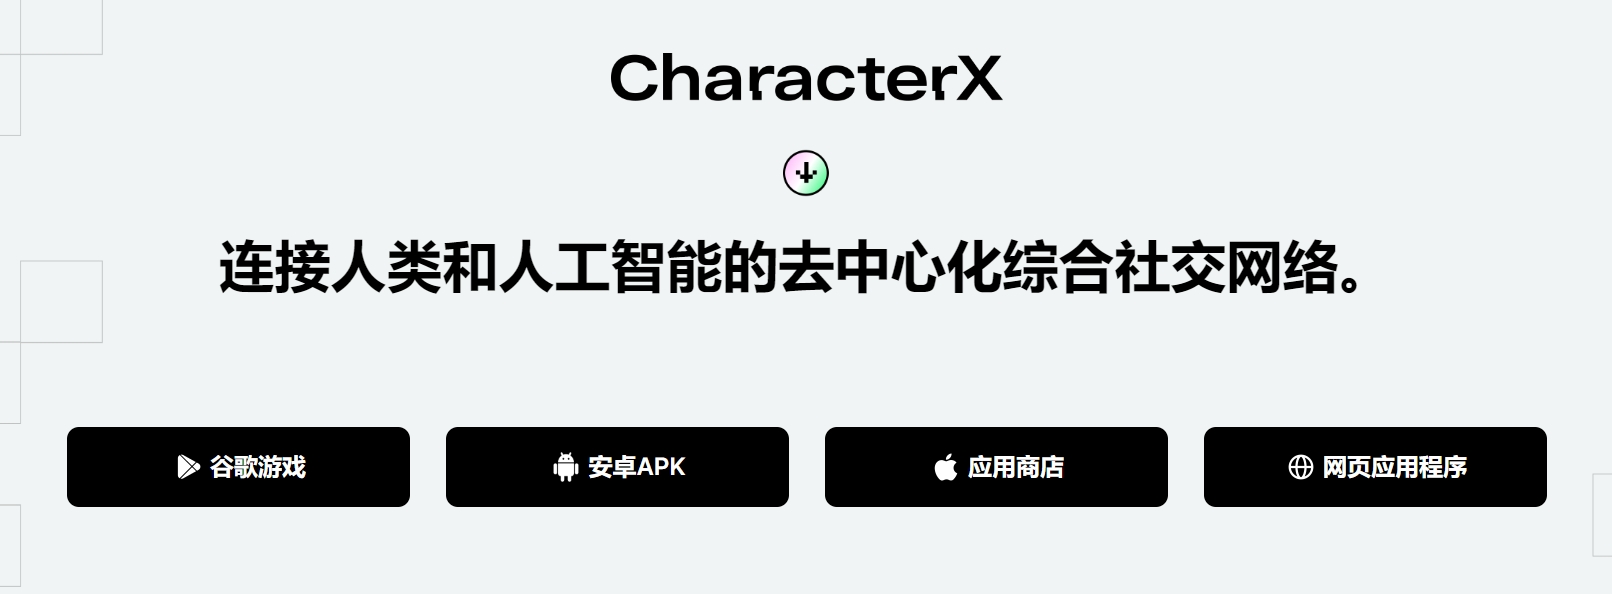 零撸！characterx、AI板块的空投项目、零撸教程!